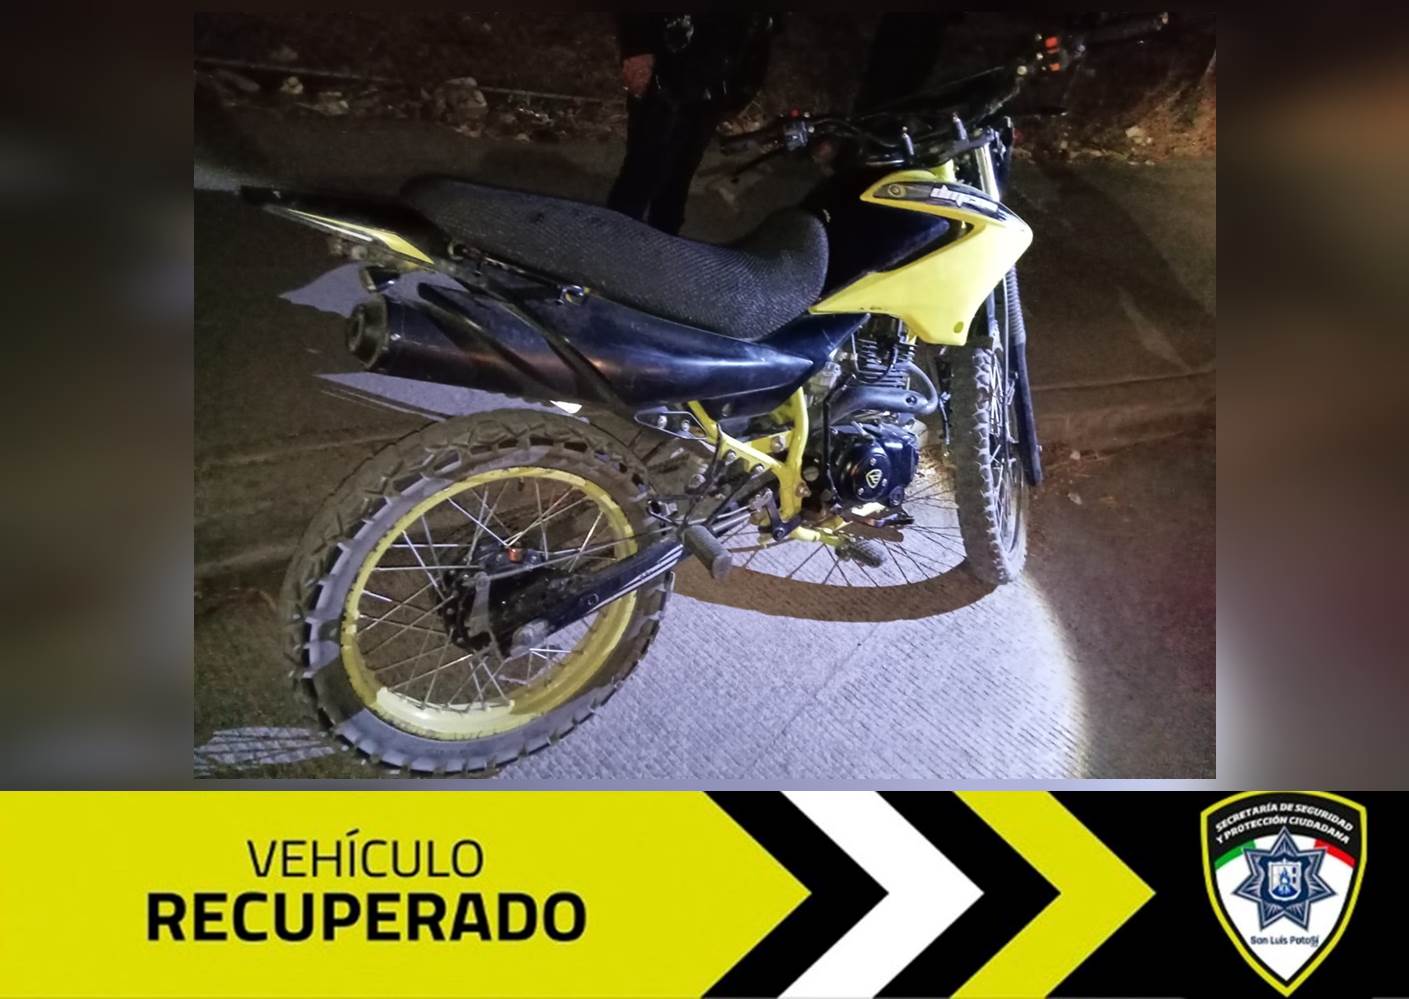 Se efectuó la detención de dos adolescentes que tripulaban una motocicleta con reporte de robo en calles de la colonia Prados 2ª sección.